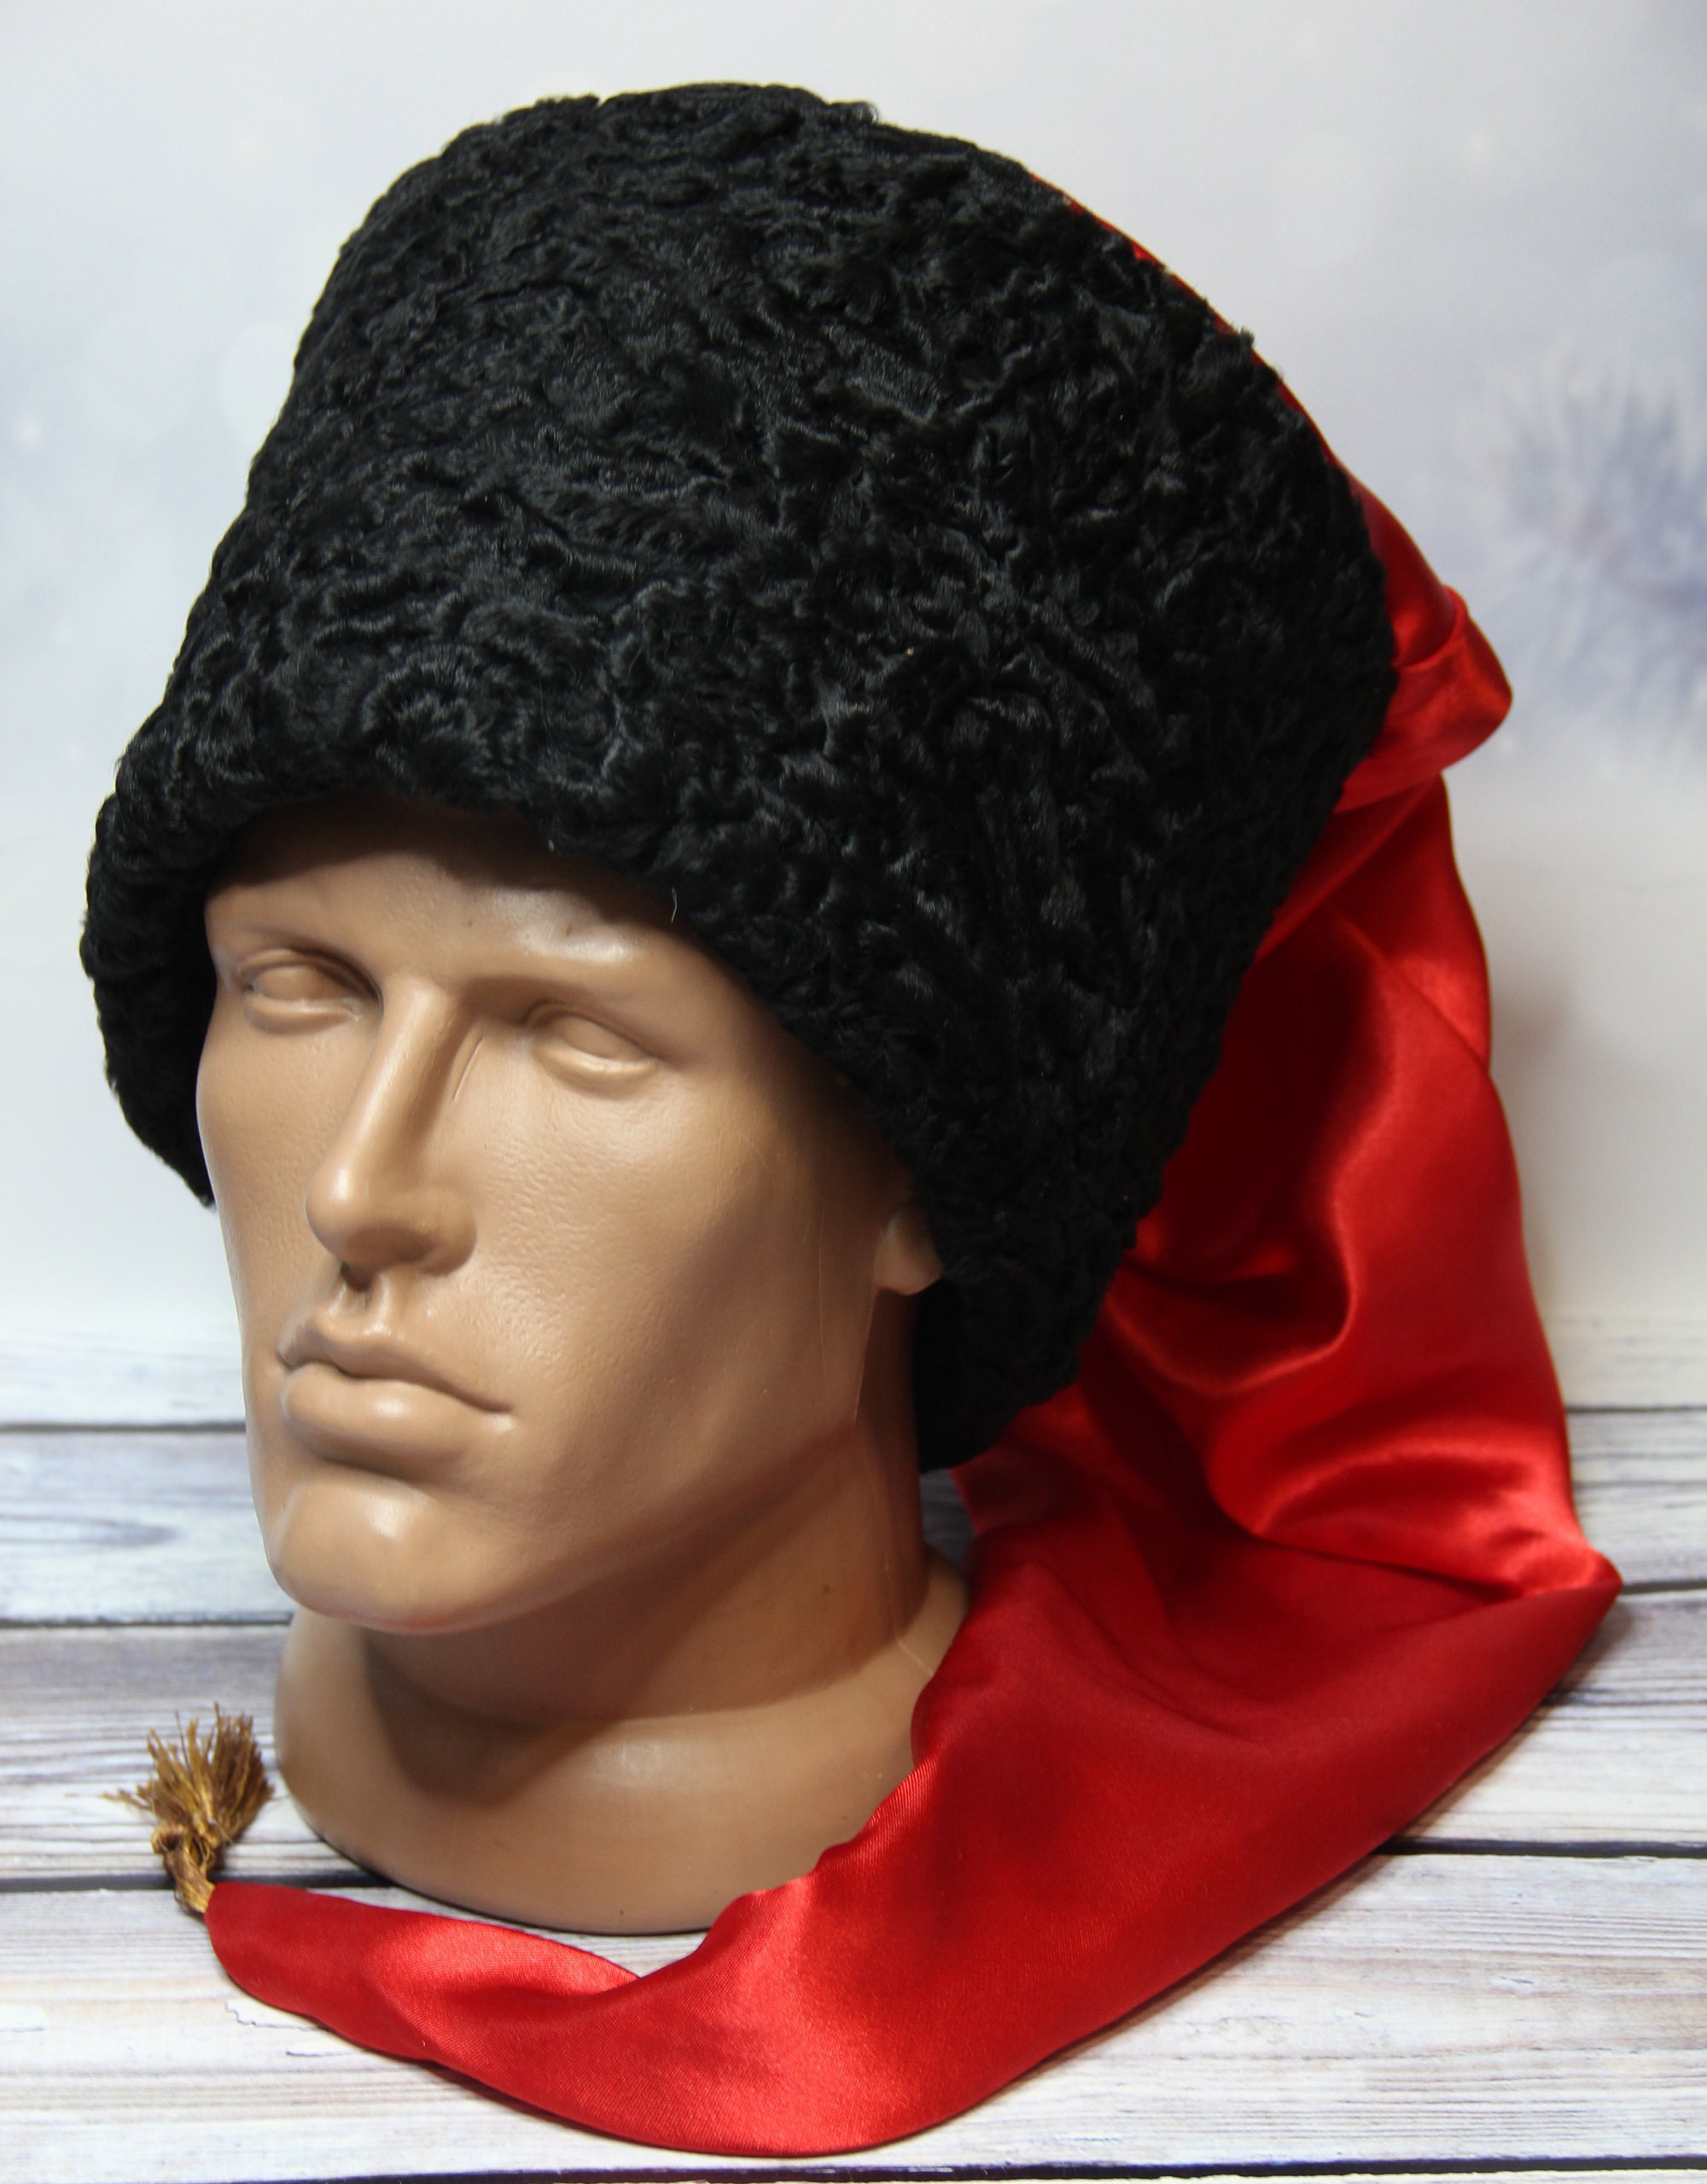 HERGESTELLT in der UKRAINE Vintage Kosaken-Wintermütze Papaha, Kubanka-Mütze,  natürliche Astrachan-Pelzmütze mit rotem Satin-Top - .de